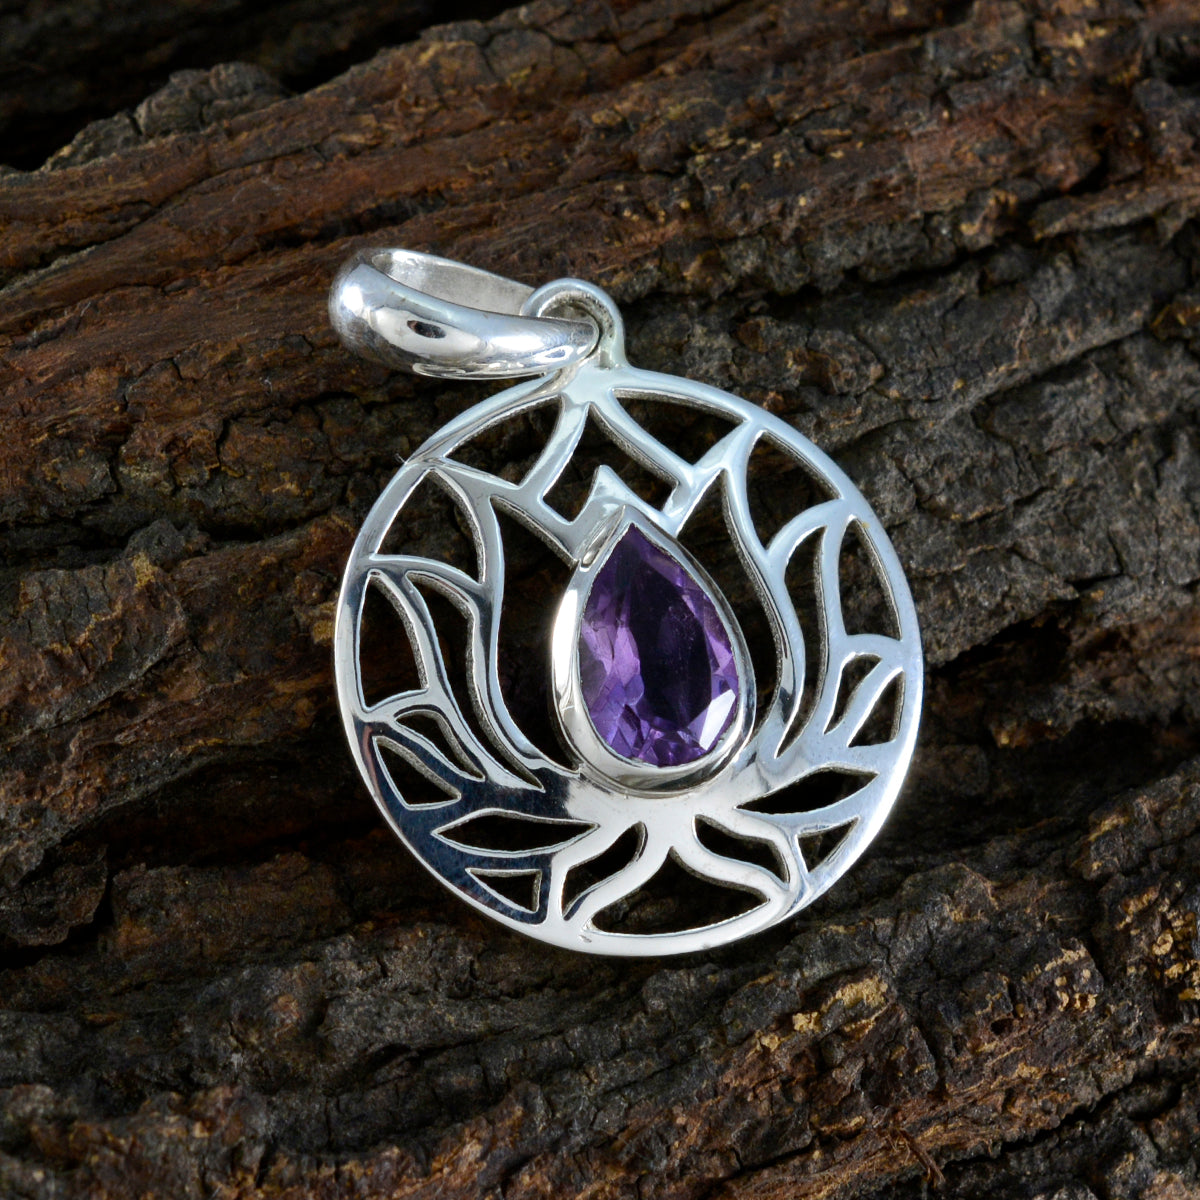 Riyo Ravishing Gems Anhänger in Form eines Birnen-facettierten violetten Amethysts aus massivem Silber, Geschenk für Karfreitag